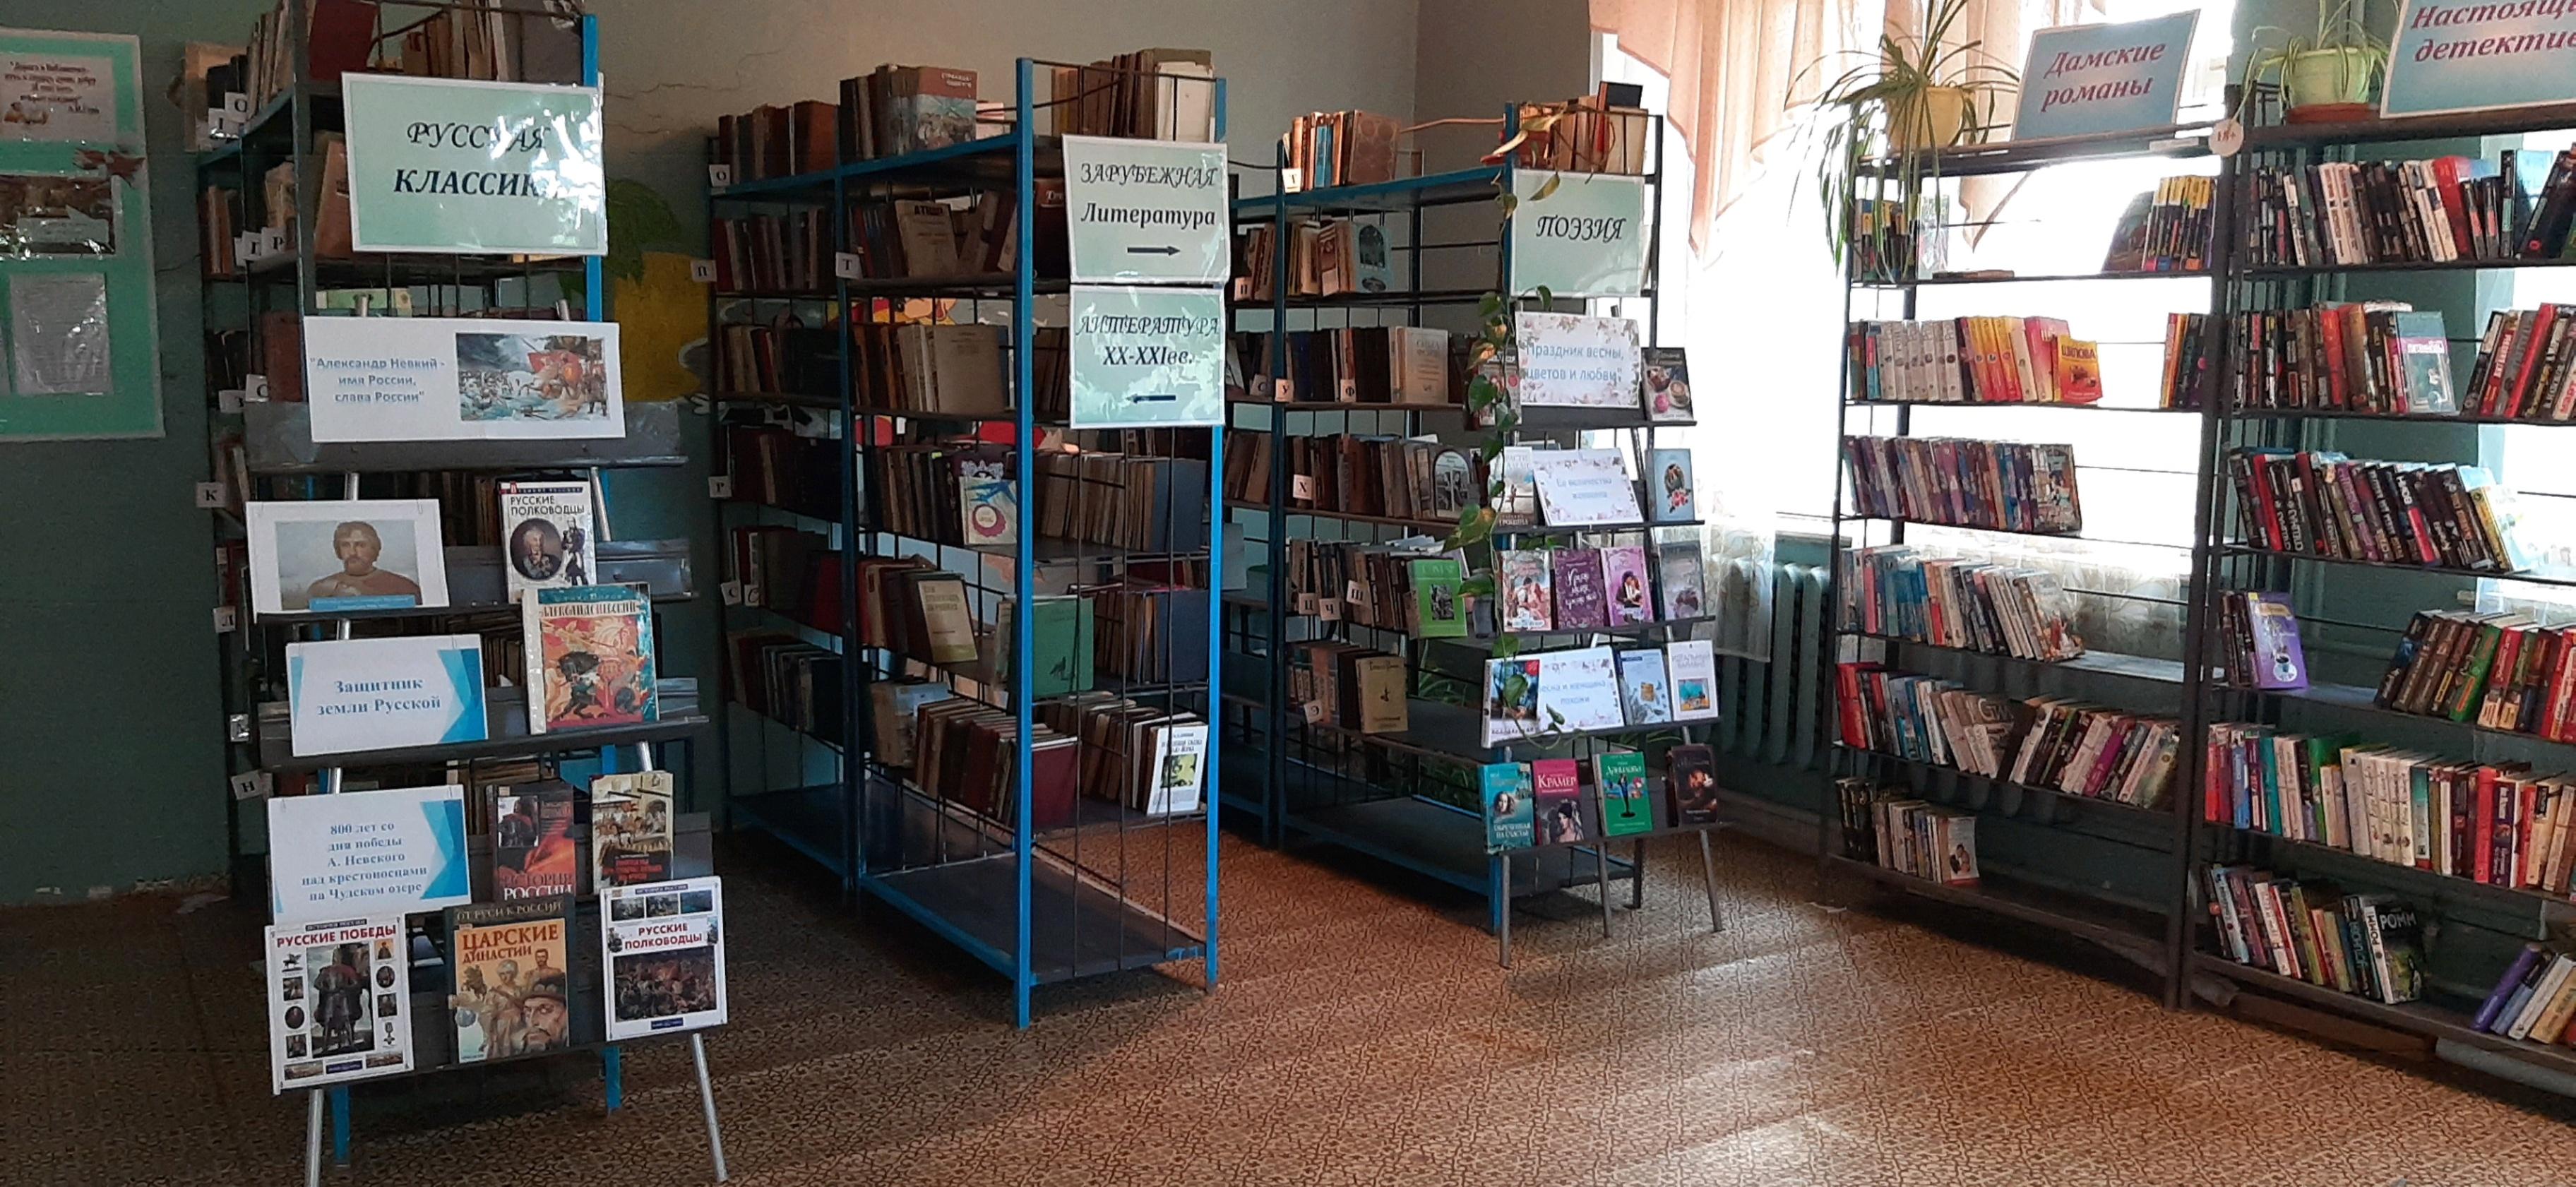 Зеленогорская сельская библиотека-филиал